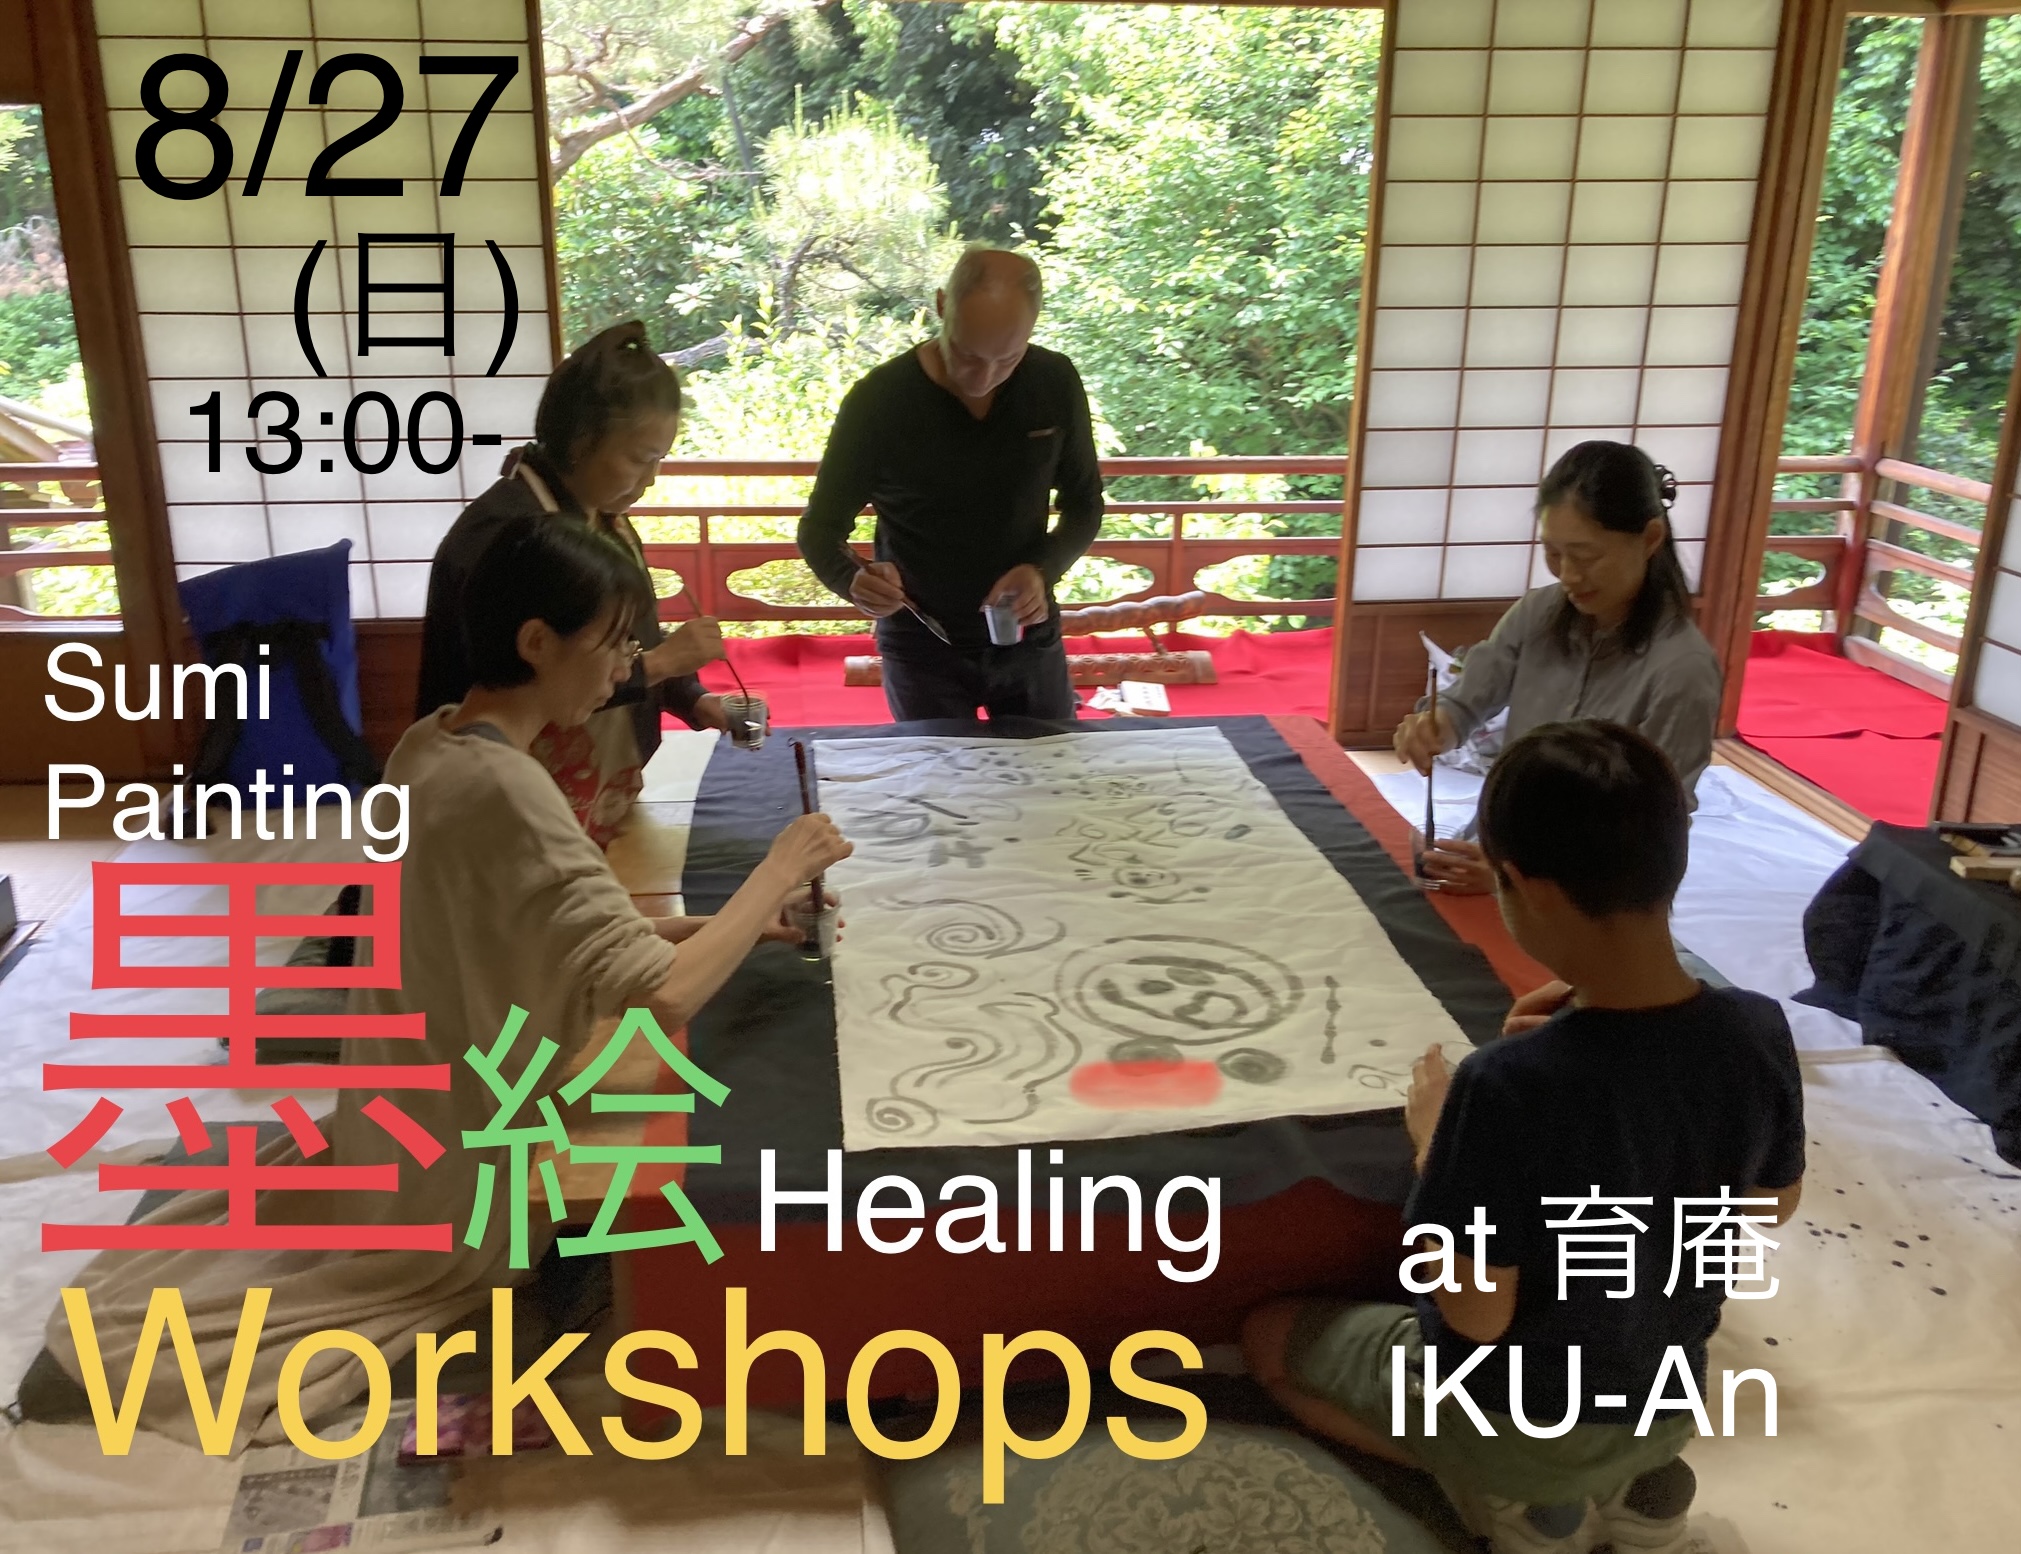 【ご案内】8/27(日sun).「墨絵Workshop」開催!　参加者募集中!　”Sumi-ink Painting Workshop”will be held!/